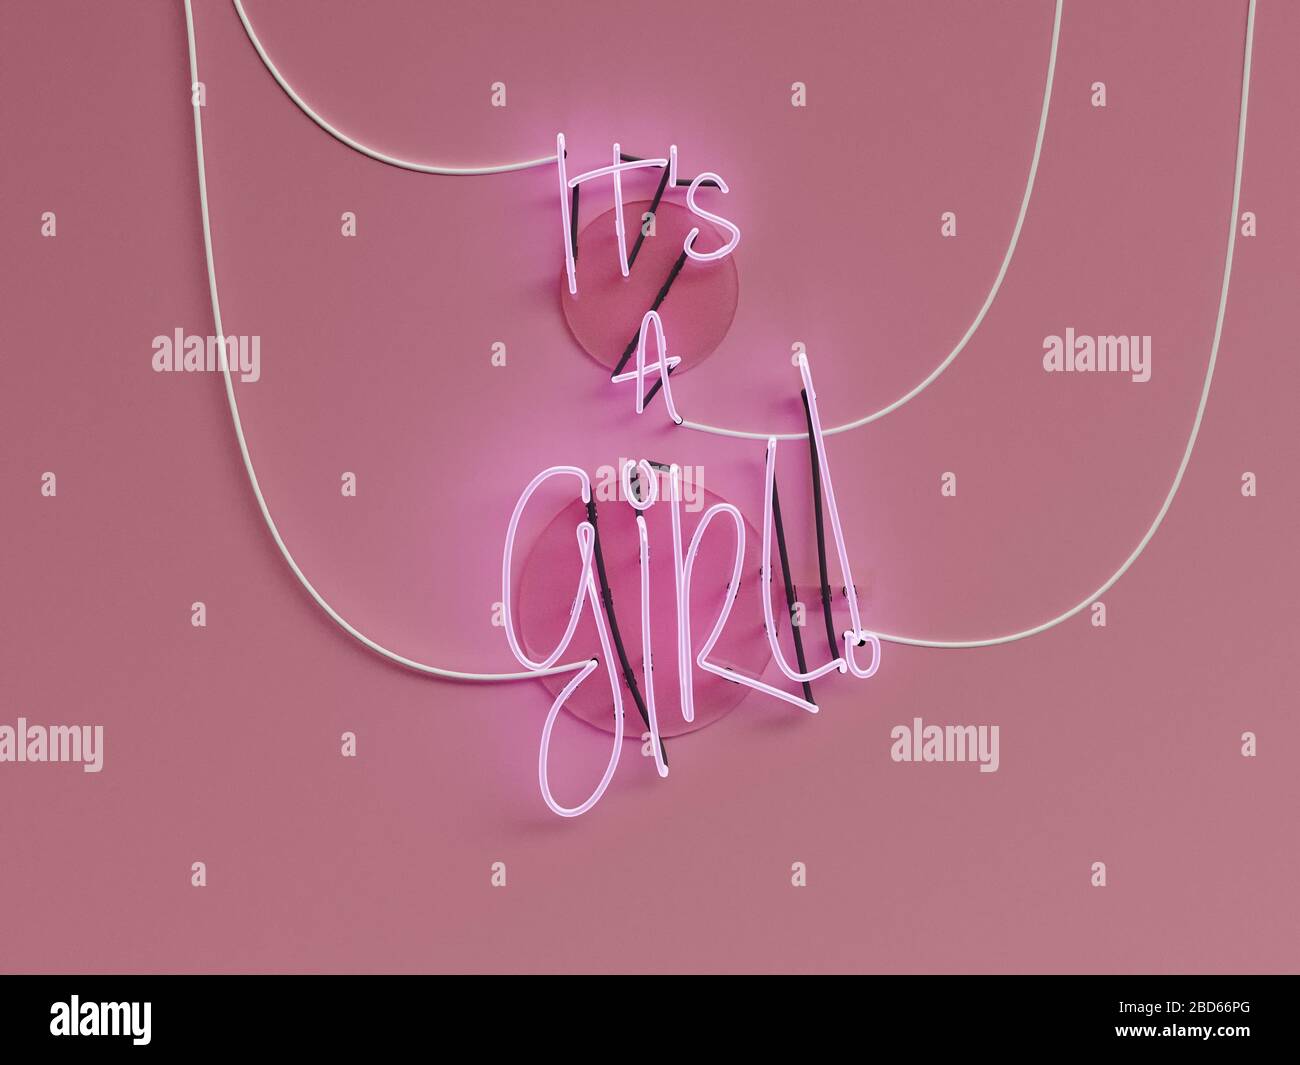 Es ist ein Mädchen Ankündigung Neon-Zeichen über einem rosafarbenen Hintergrund mit allen Worten auf - 3d Rendering-Konzept Stockfoto